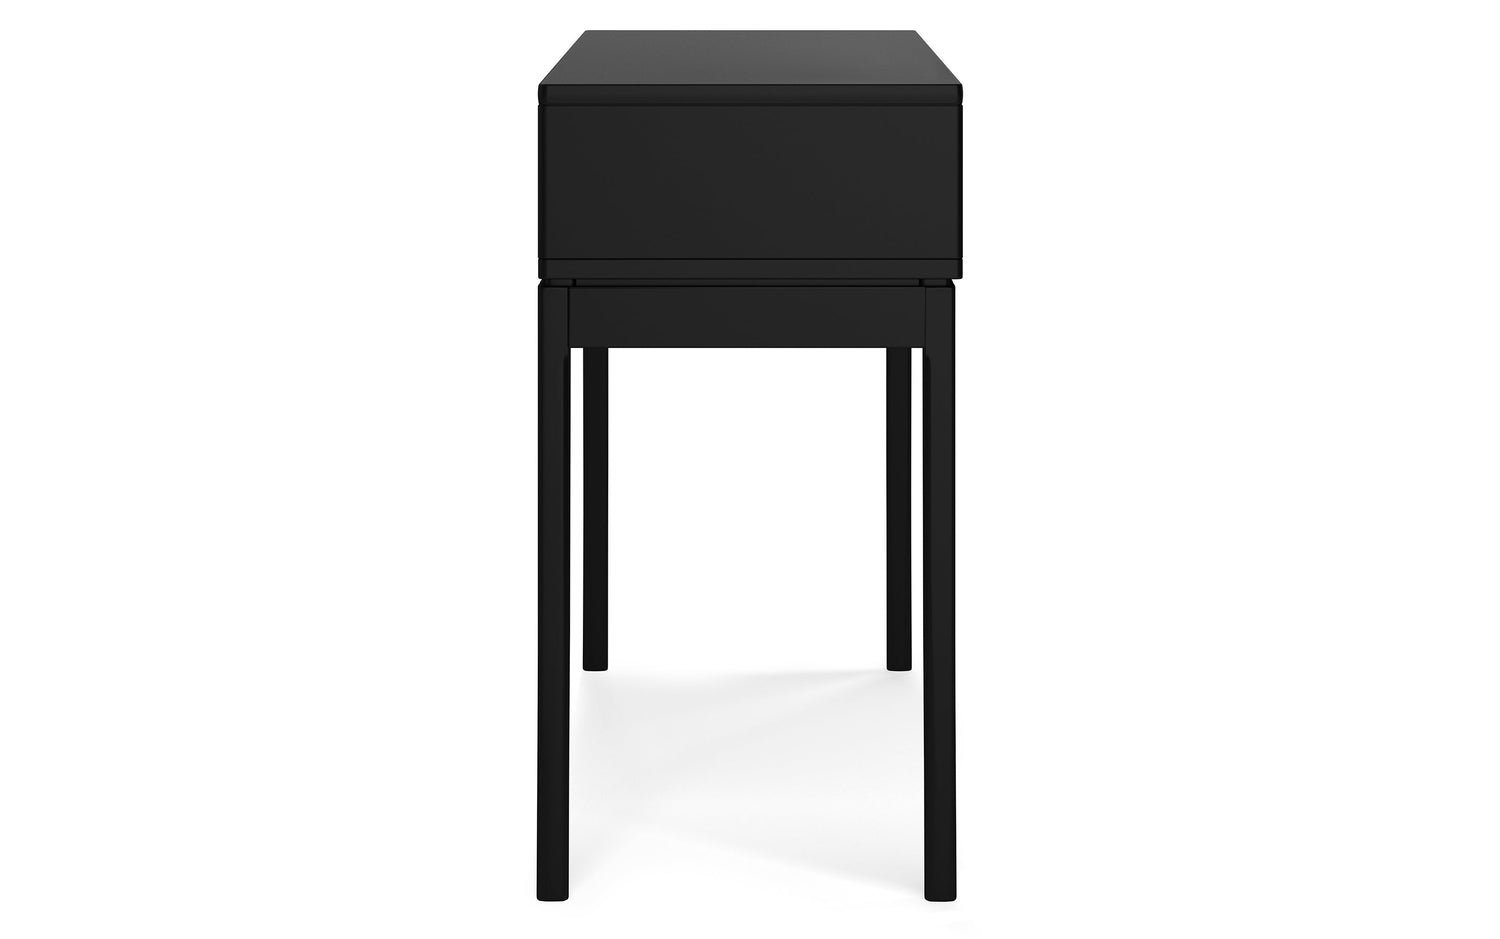  Black | Harper 54 inch Console Sofa Table